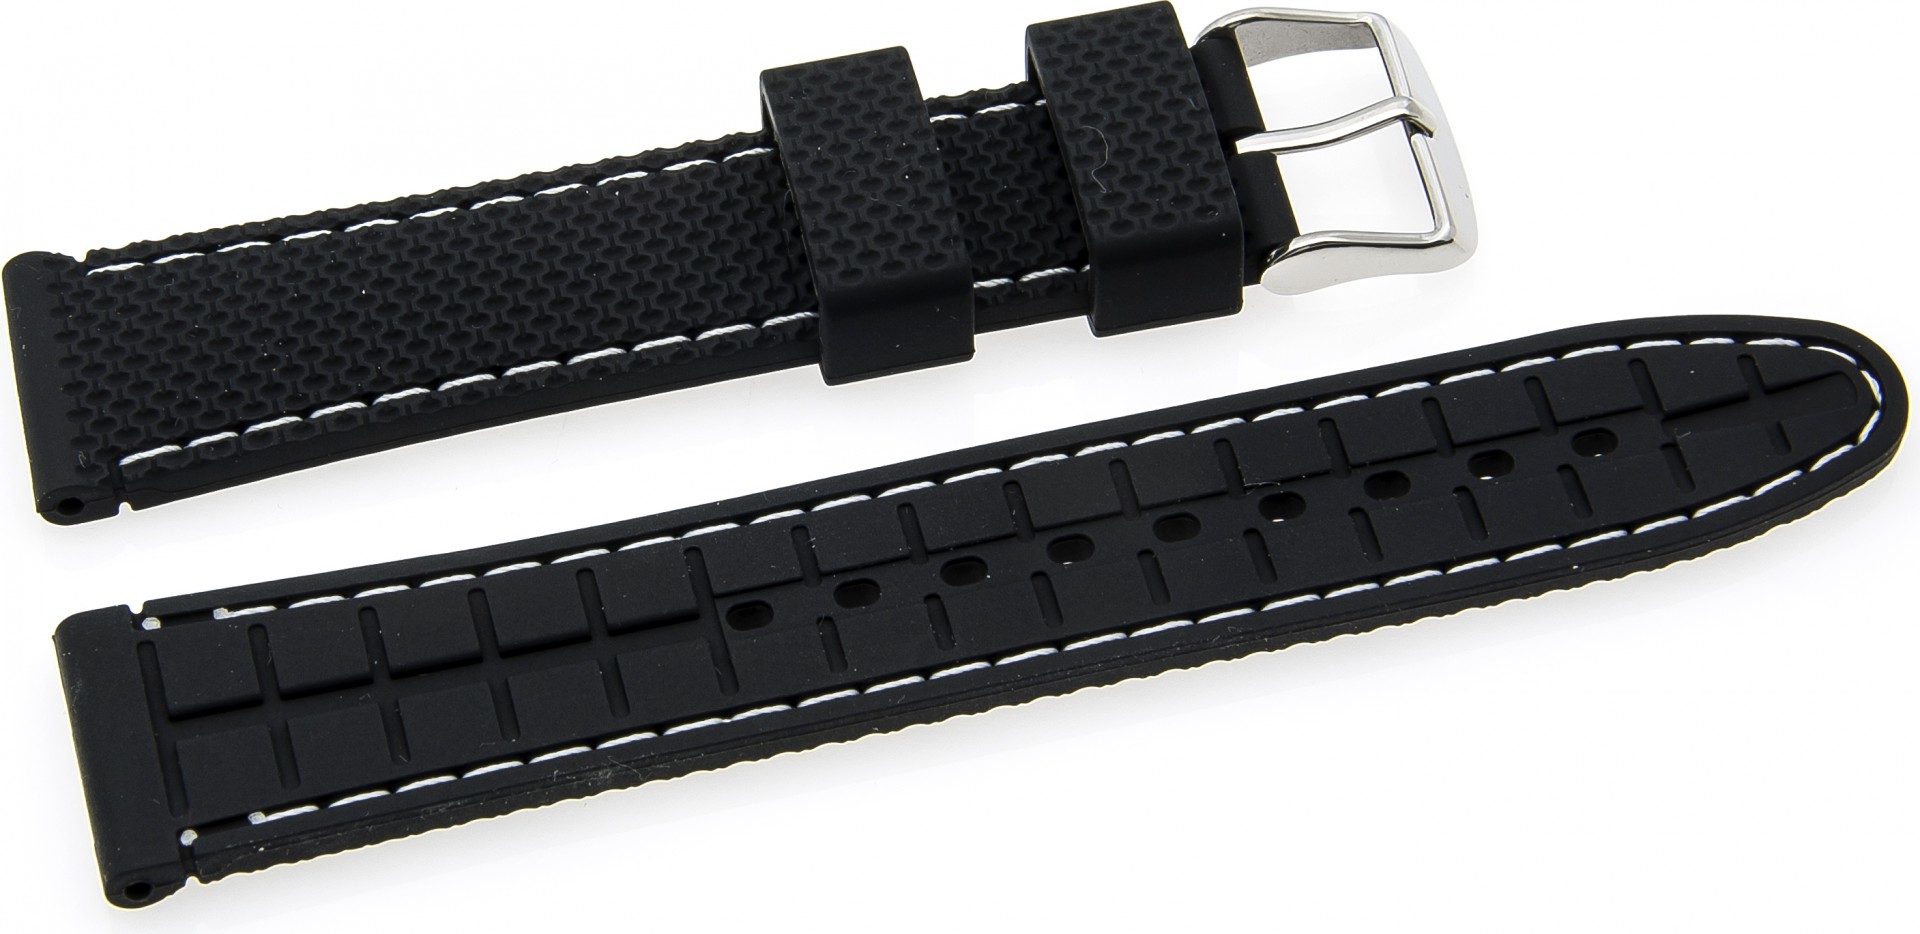   Watch Band Reifen-Muster Dornschließe - Silikon - schwarz with weiße stitching 